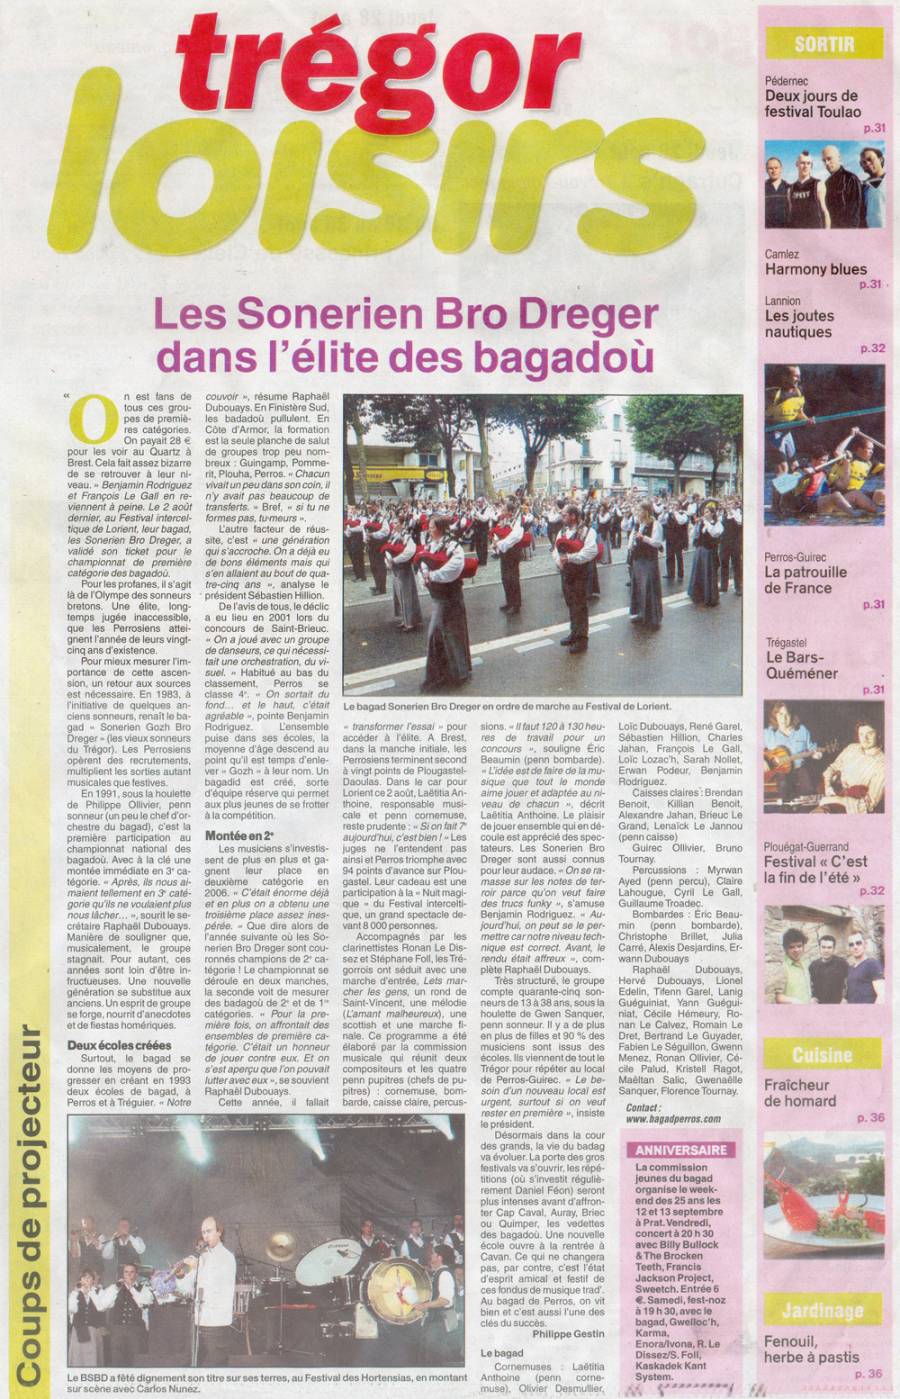 Les Sonerien Bro Dreger dans l'élite des bagadoù (page spéciale dans le Trégor)